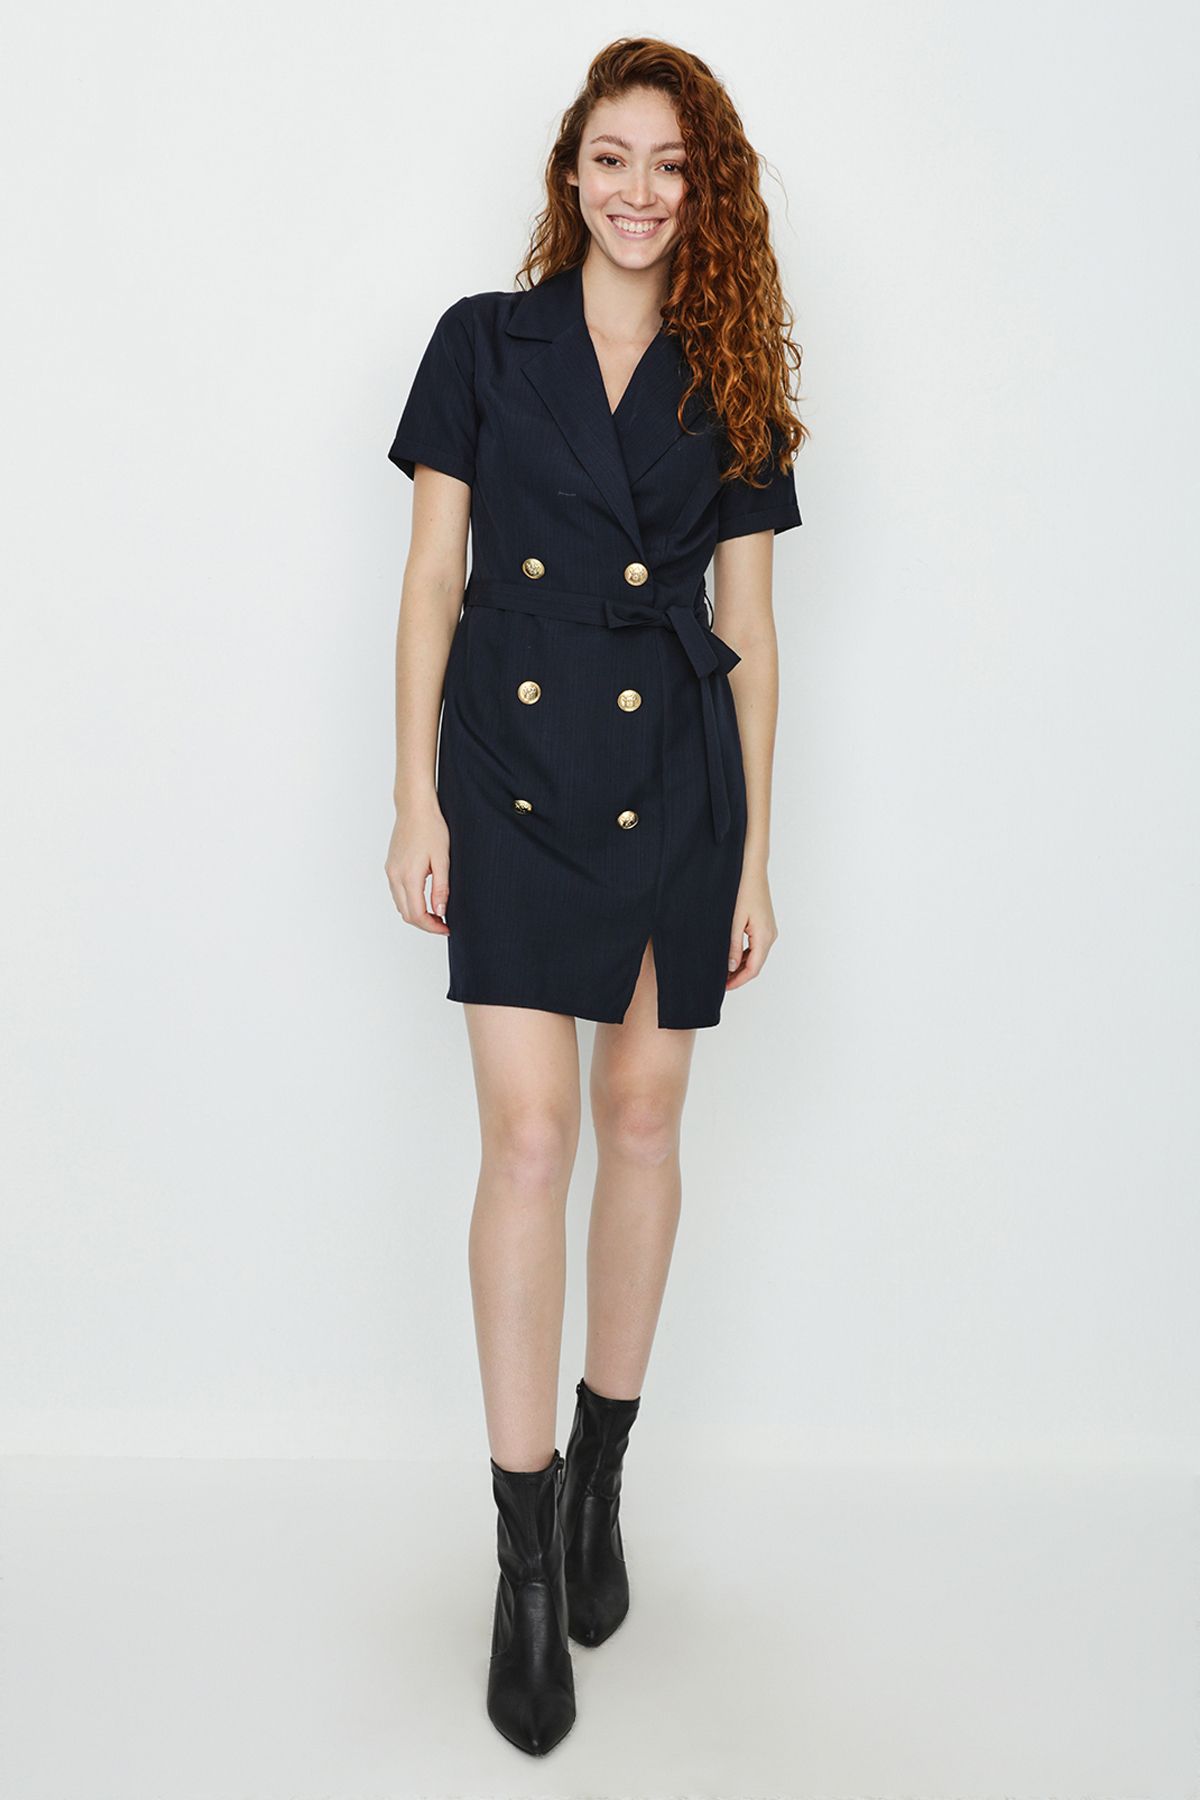 Select Moda Kadın Koyu Lacivert Düğme Detaylı Kuşaklı Ceket Elbise